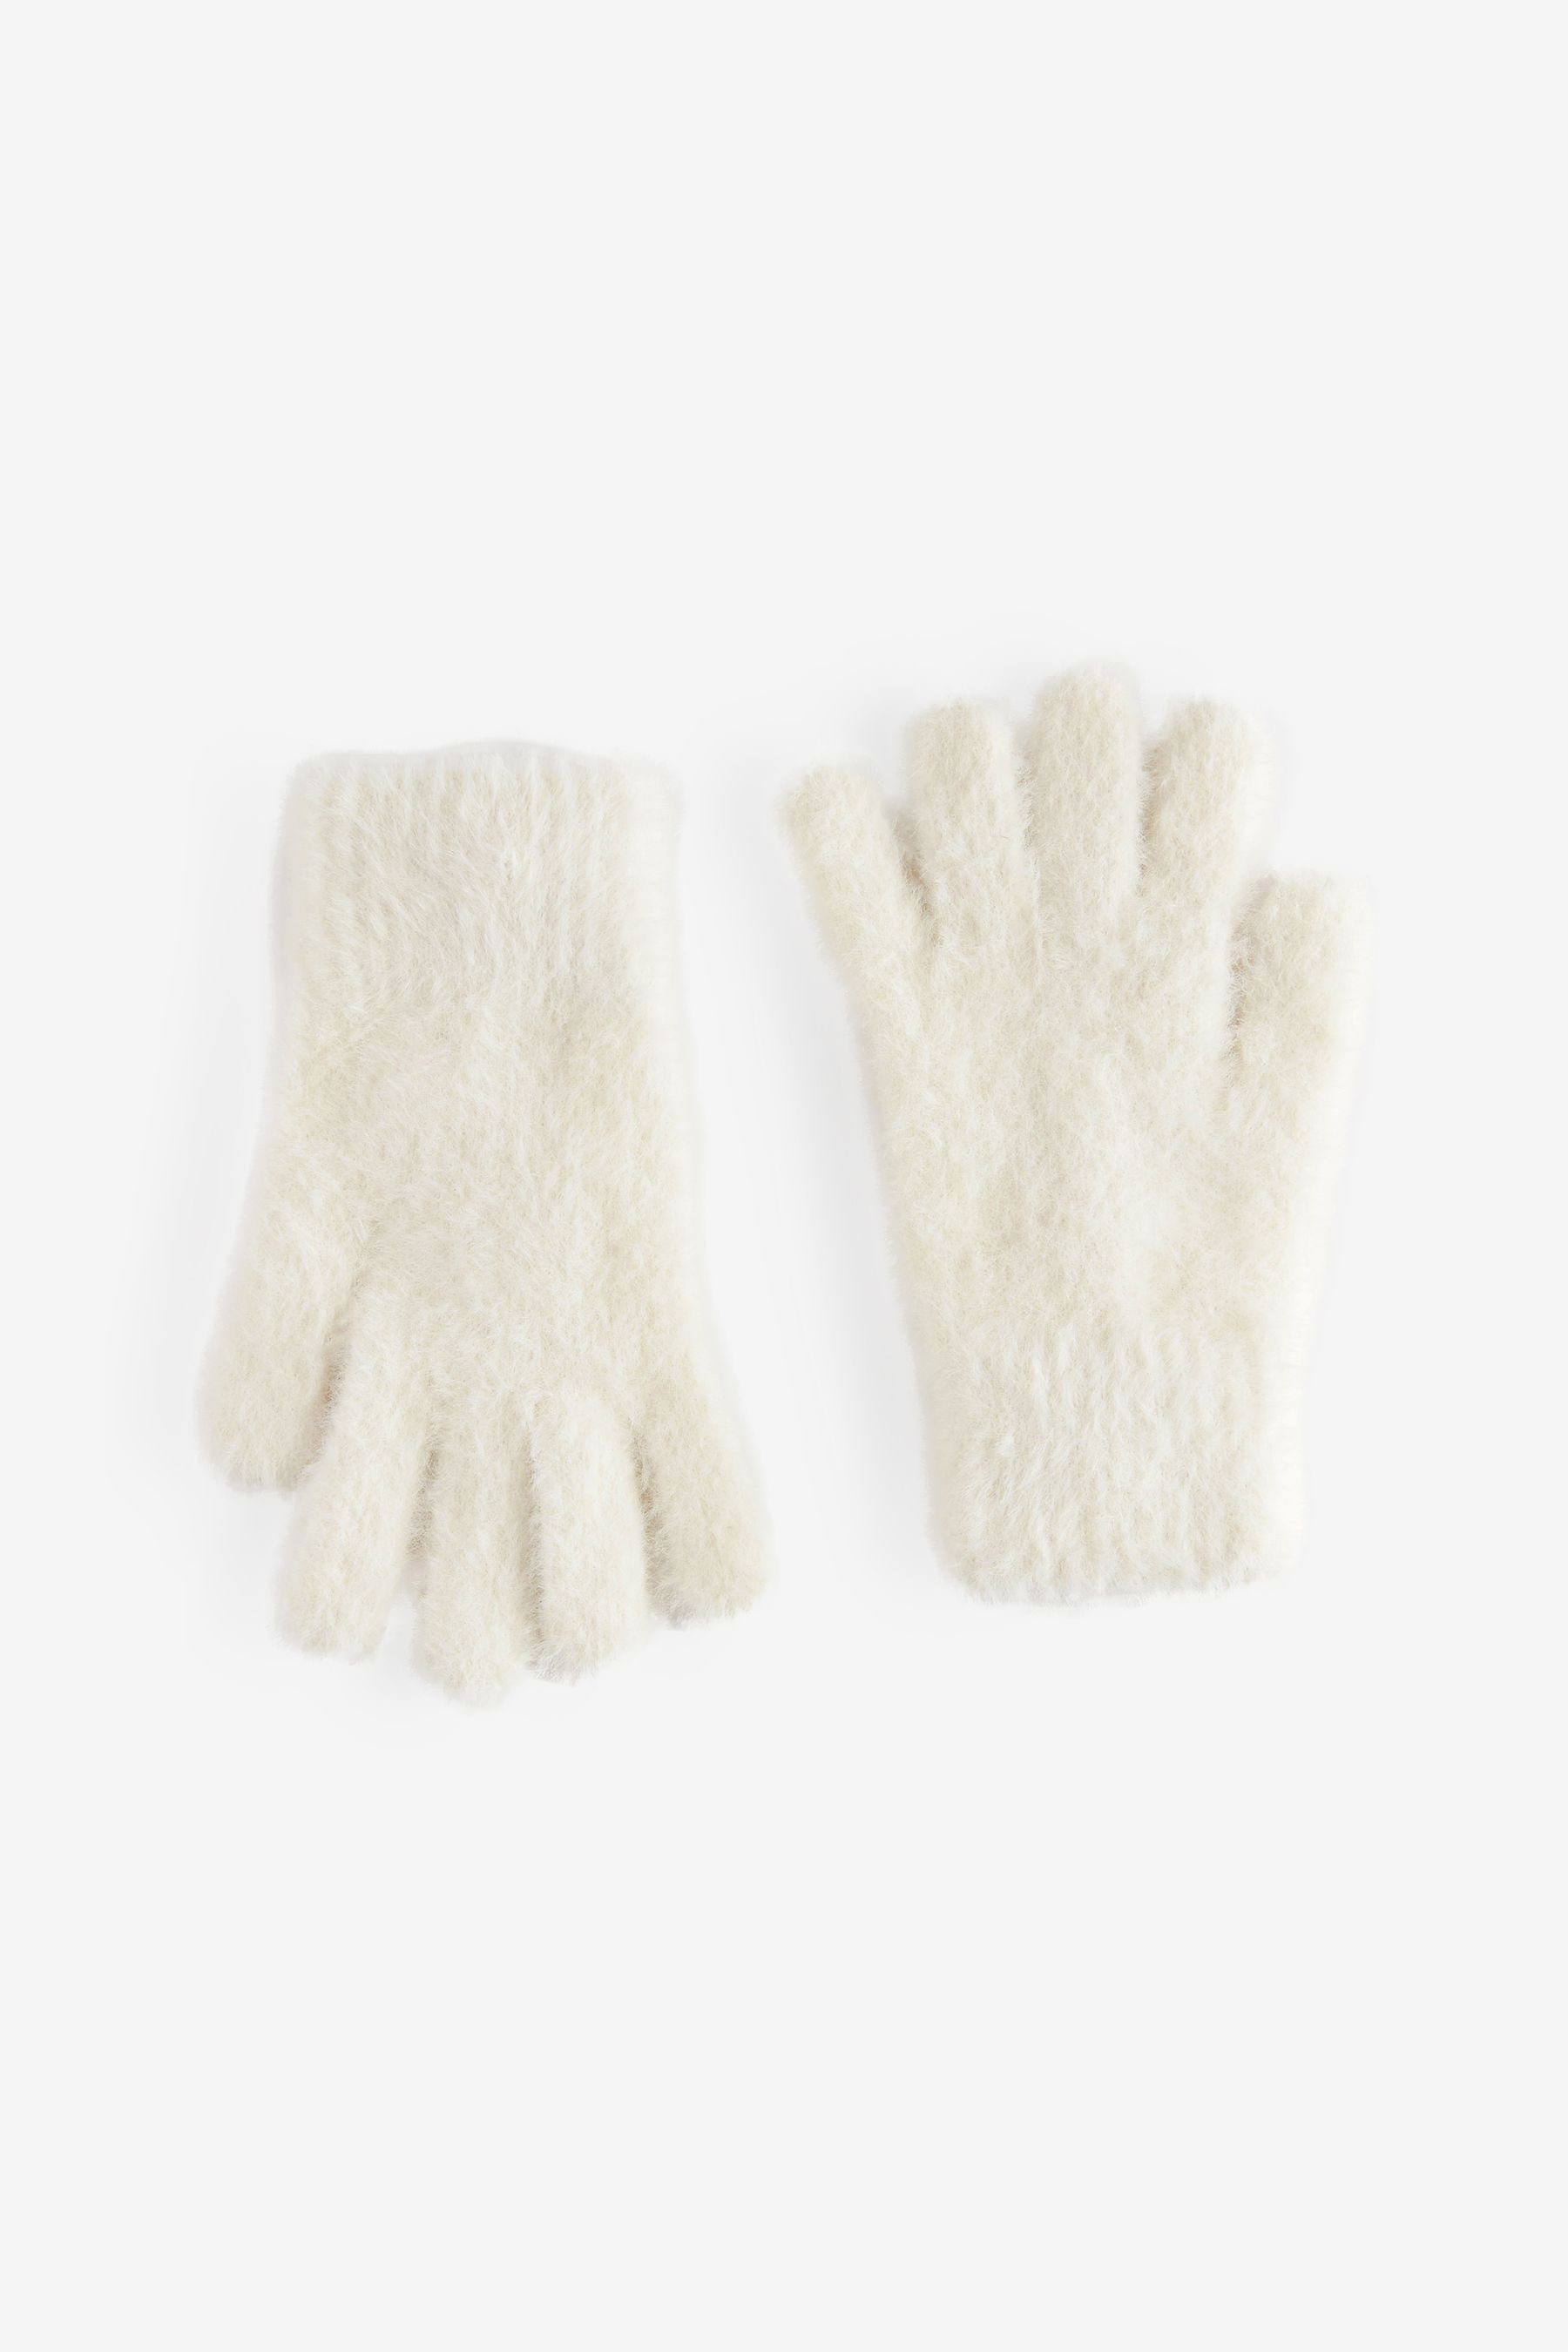 Next Strickhandschuhe Flauschige Ecru Handschuhe